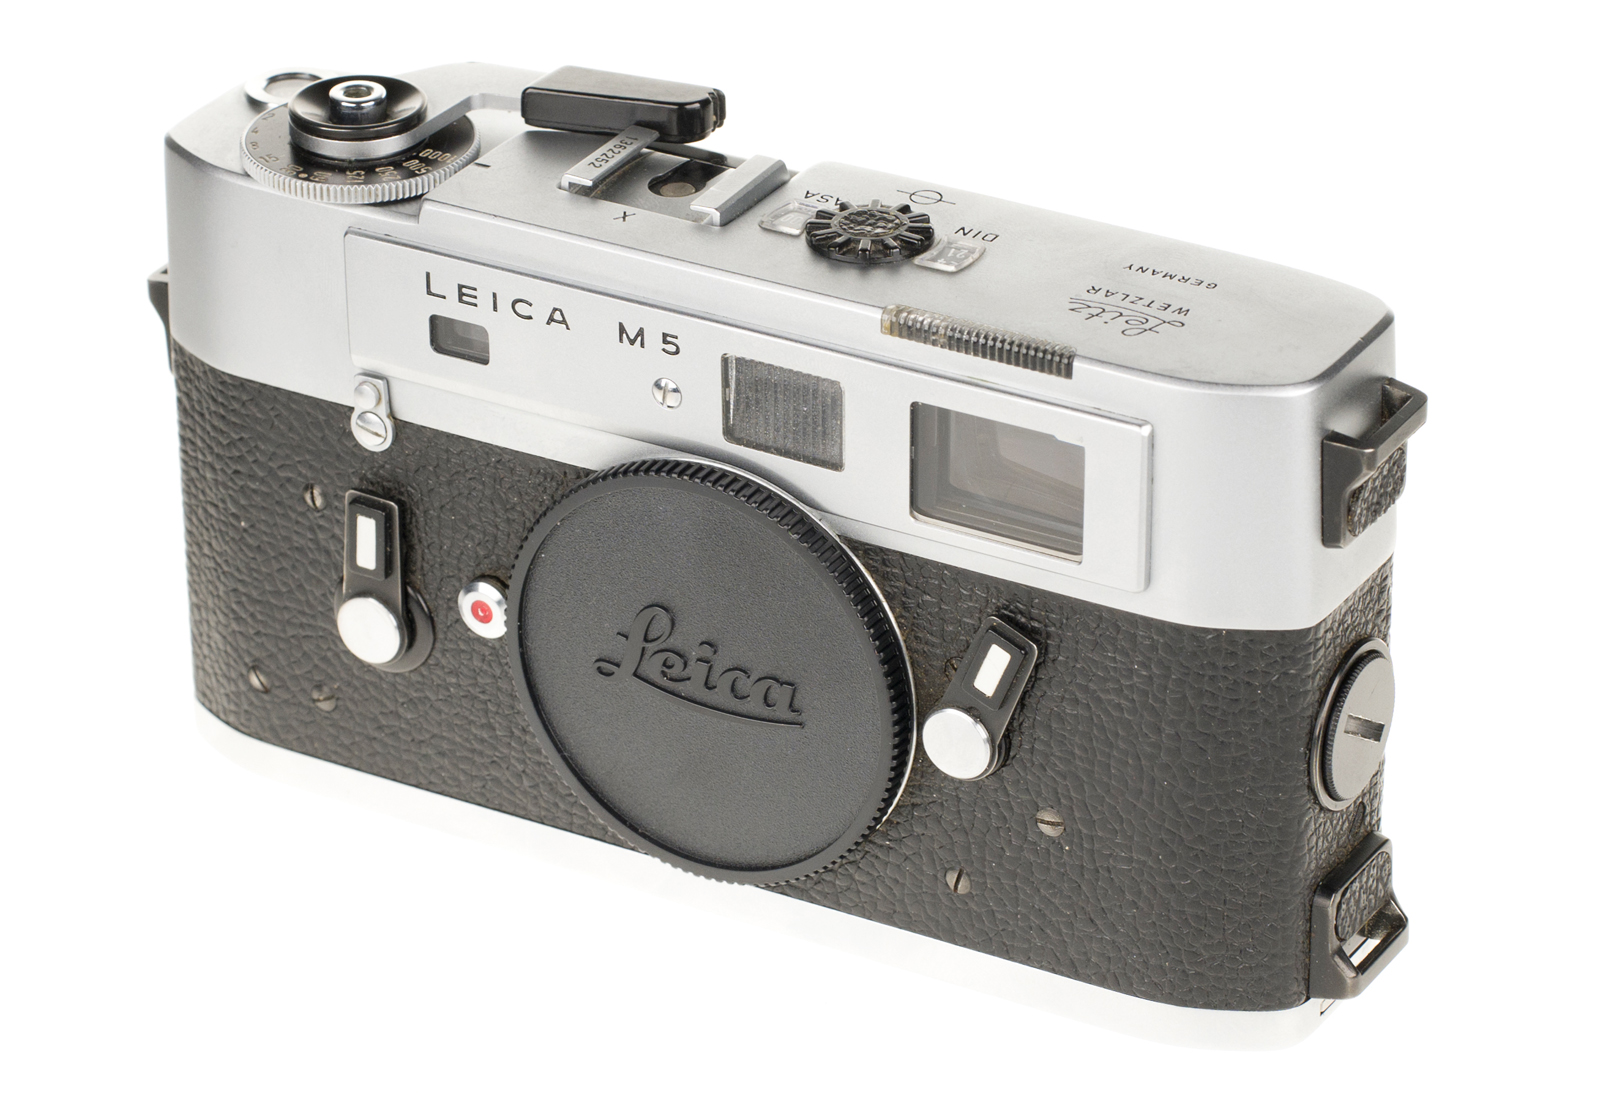 Leica M5, silver chrome